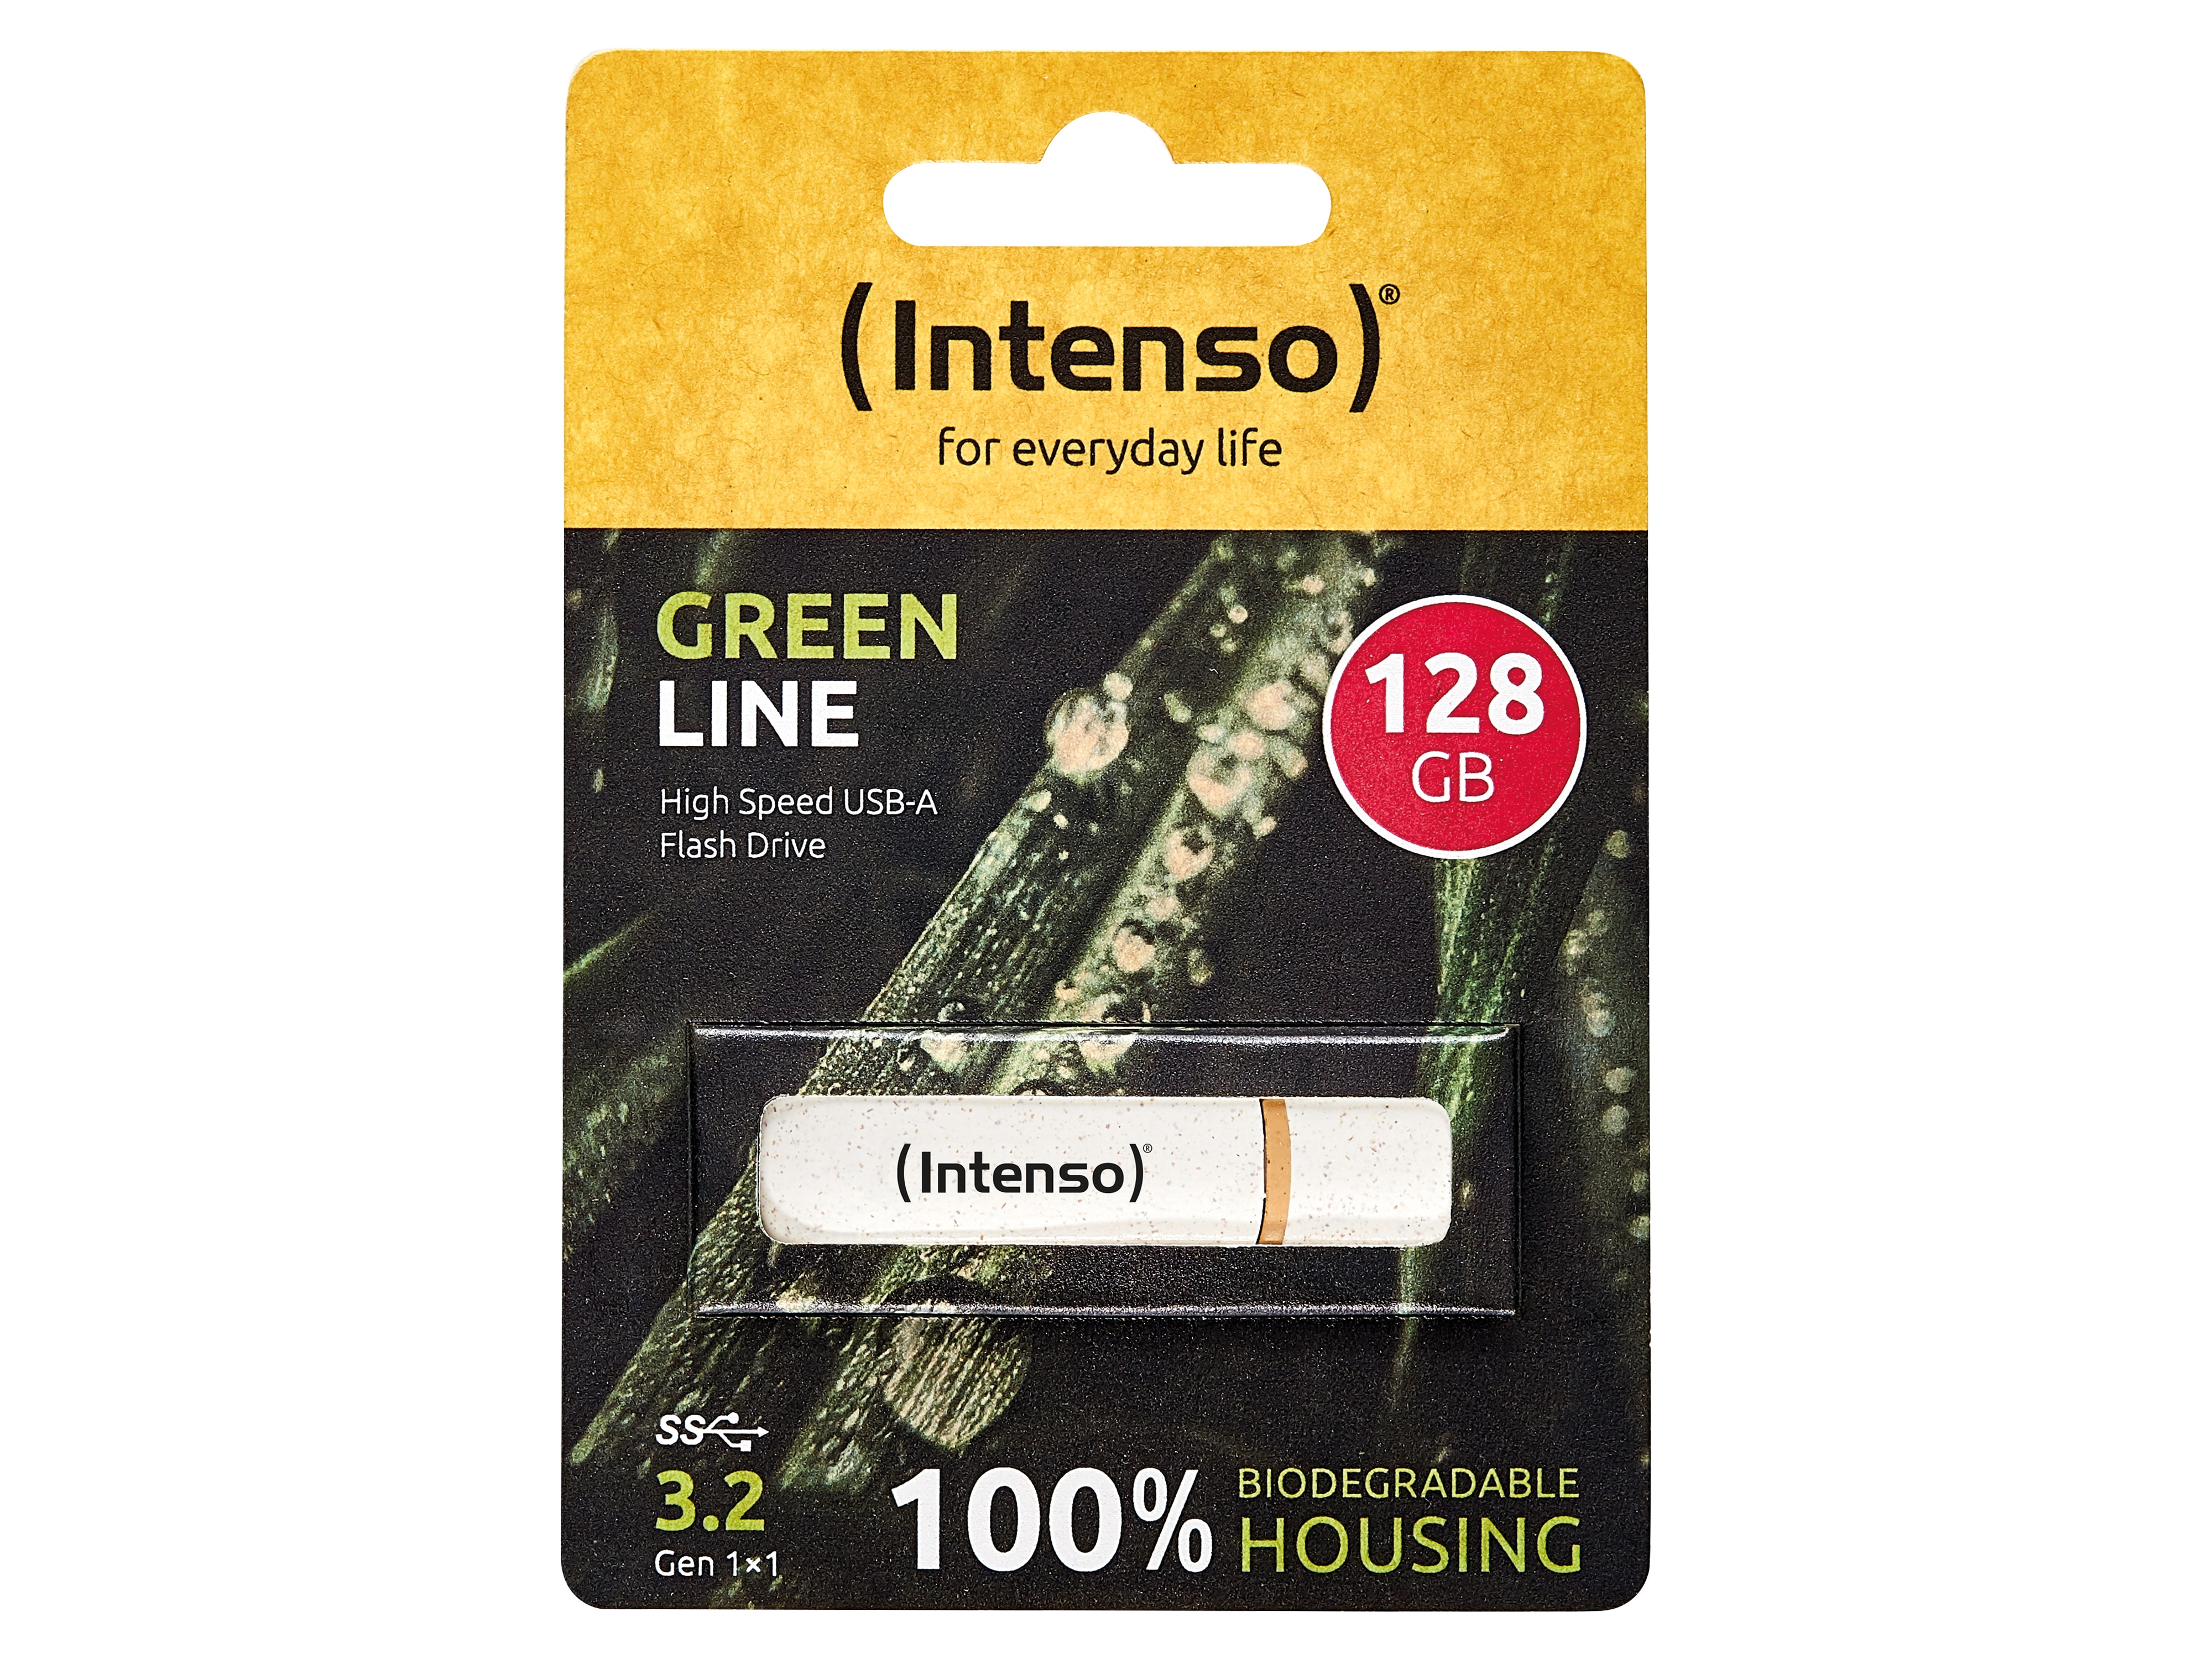 INTENSO USB 3.2-Stick INTENSO Green Line, 128 GB, beige/braun